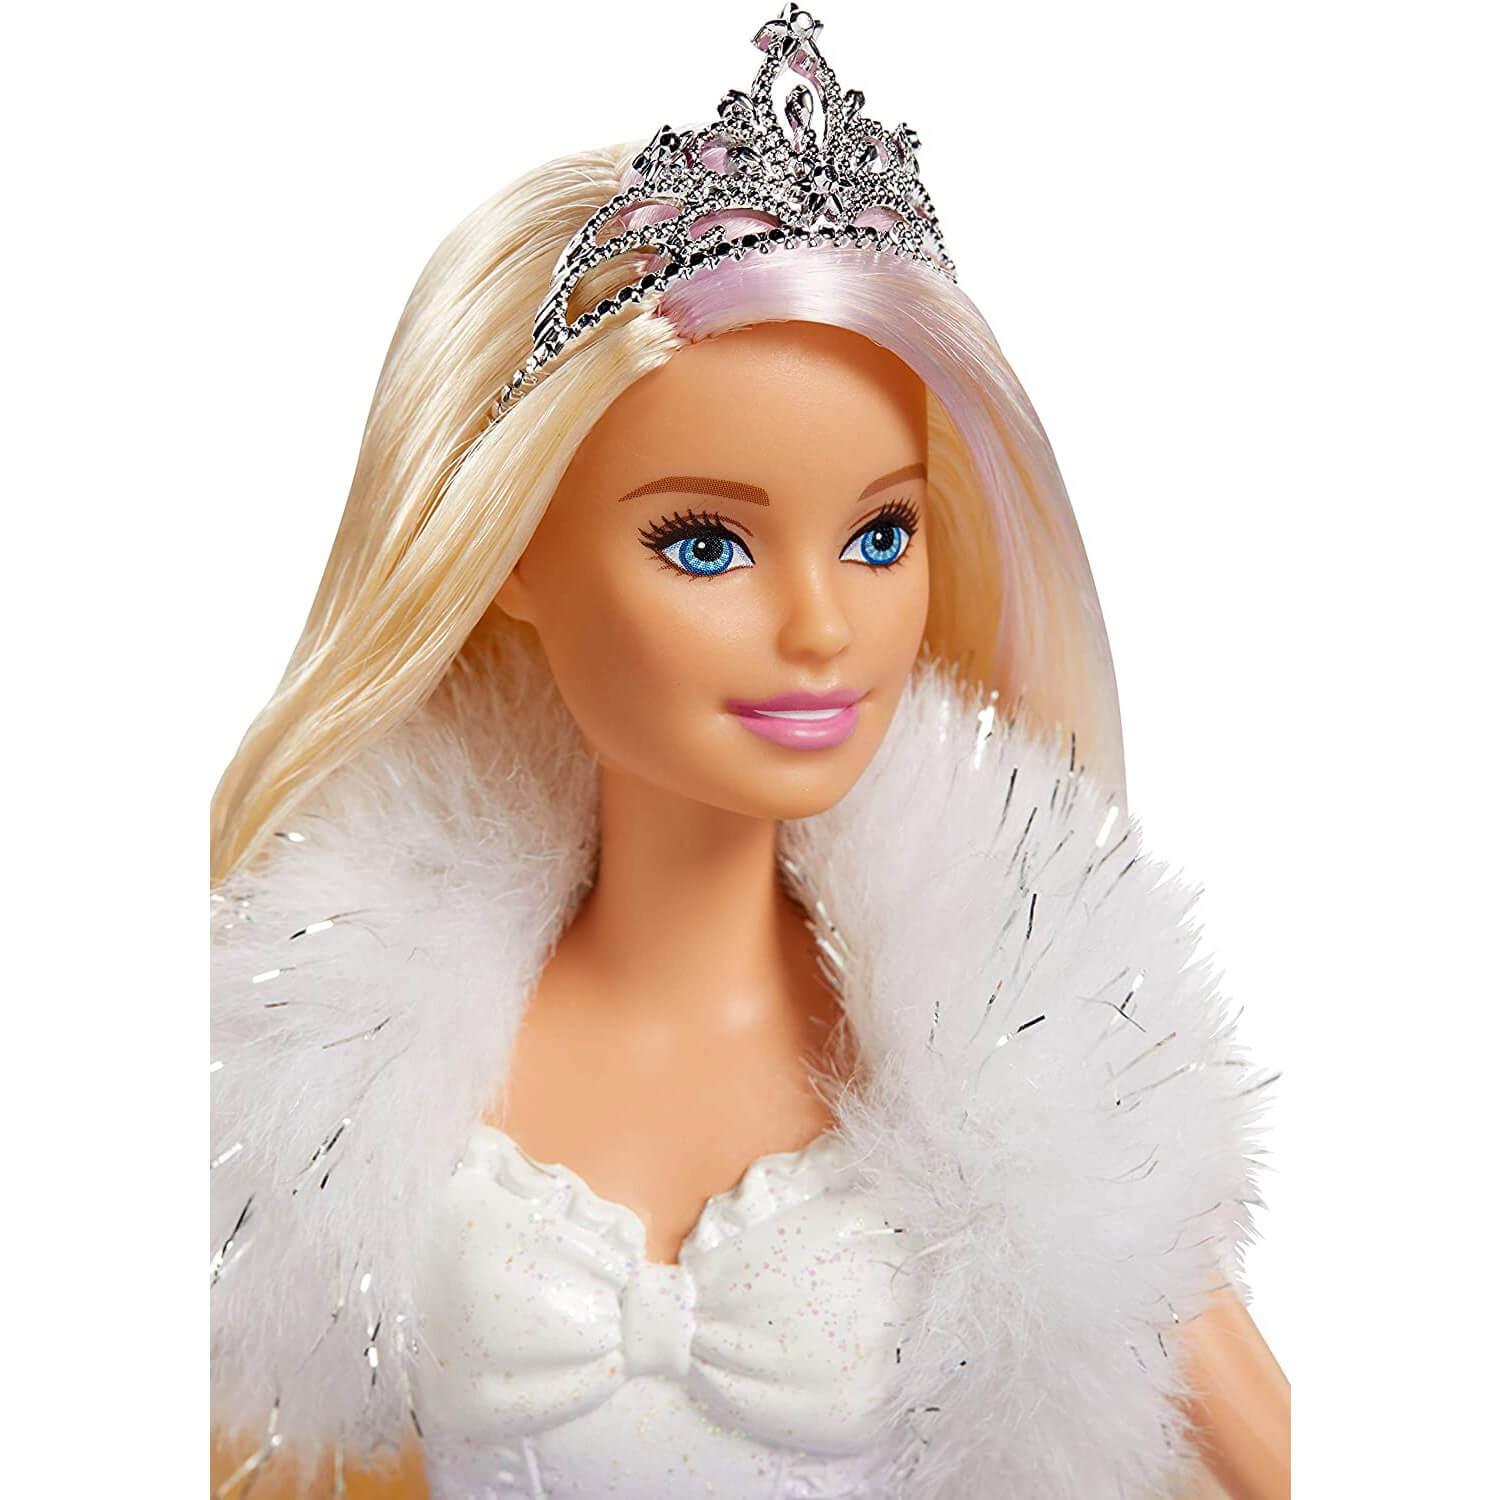 Poupée Barbie Princesse Dreamtopia : Fleurs - Jeux et jouets Mattel -  Avenue des Jeux